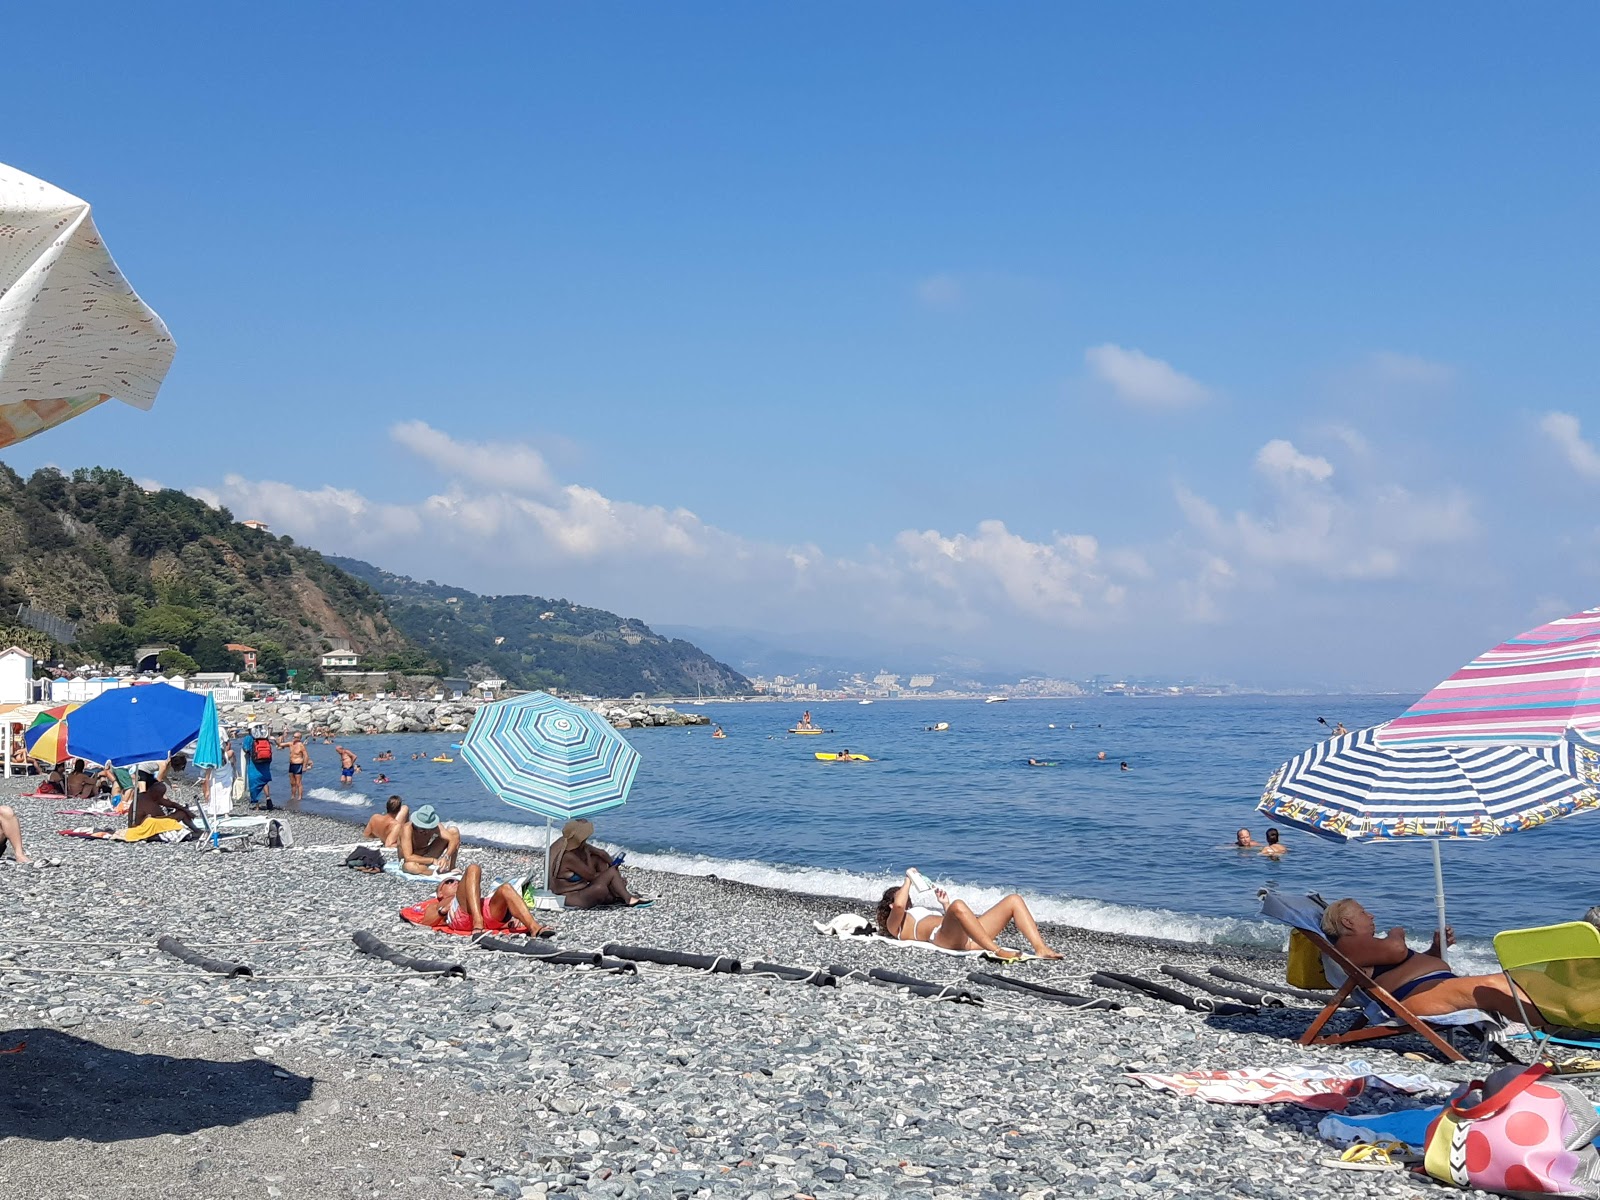 Spiaggia Olanda'in fotoğrafı uçurumlarla desteklenmiş